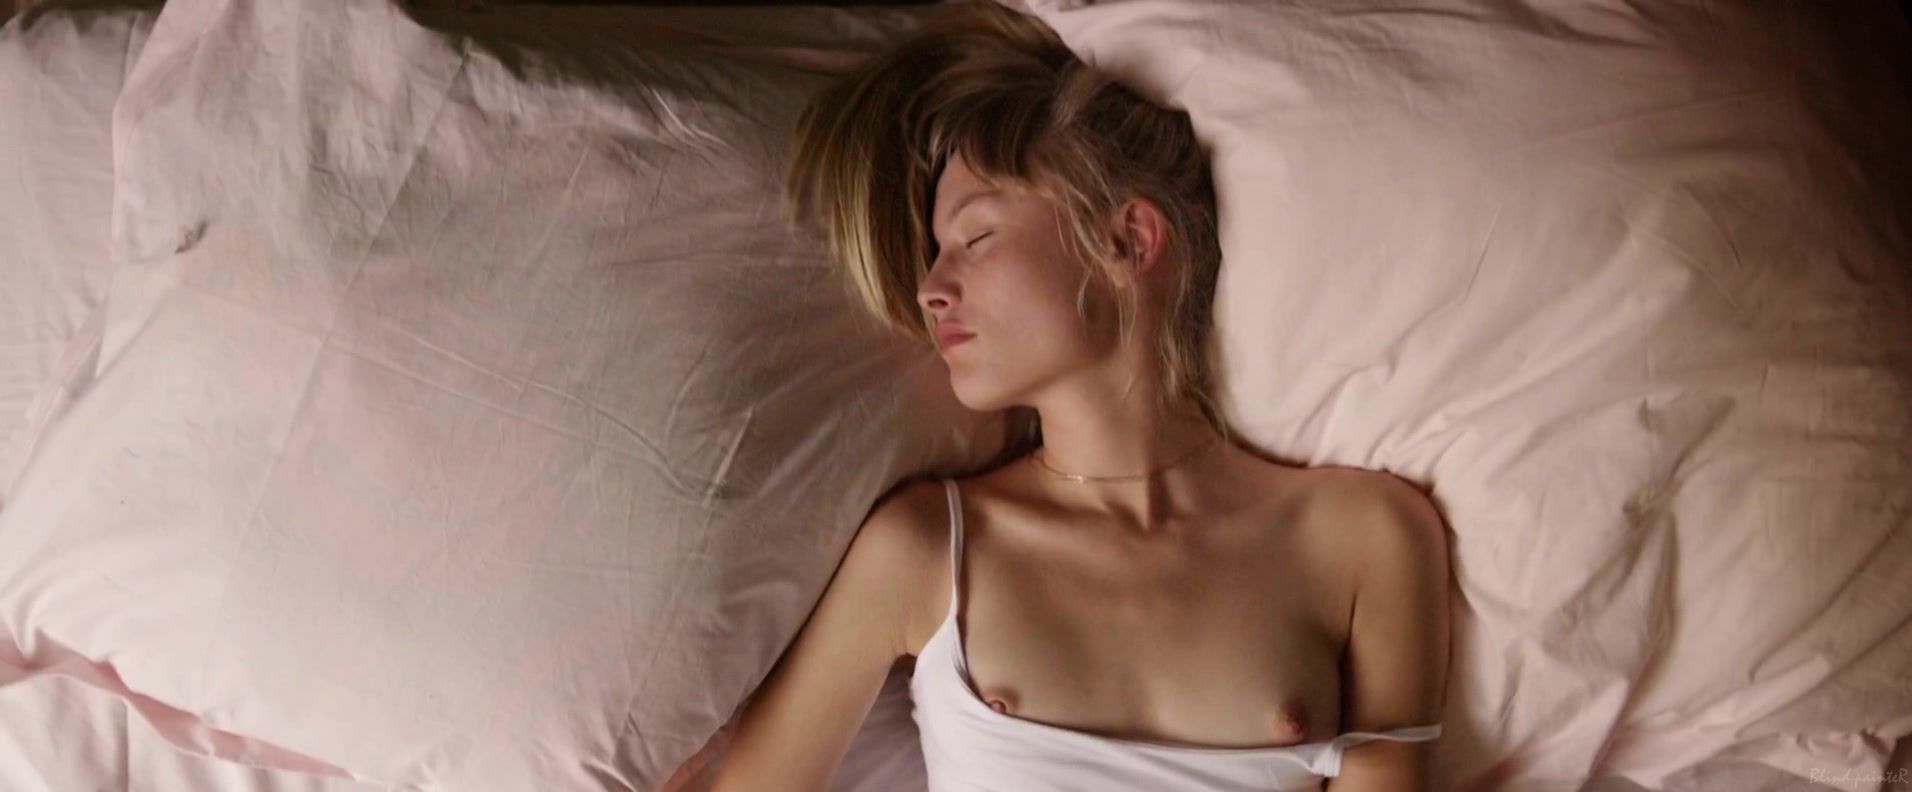 Maid Sex video Klara Kristin nude - Love (2015) Marido - 2